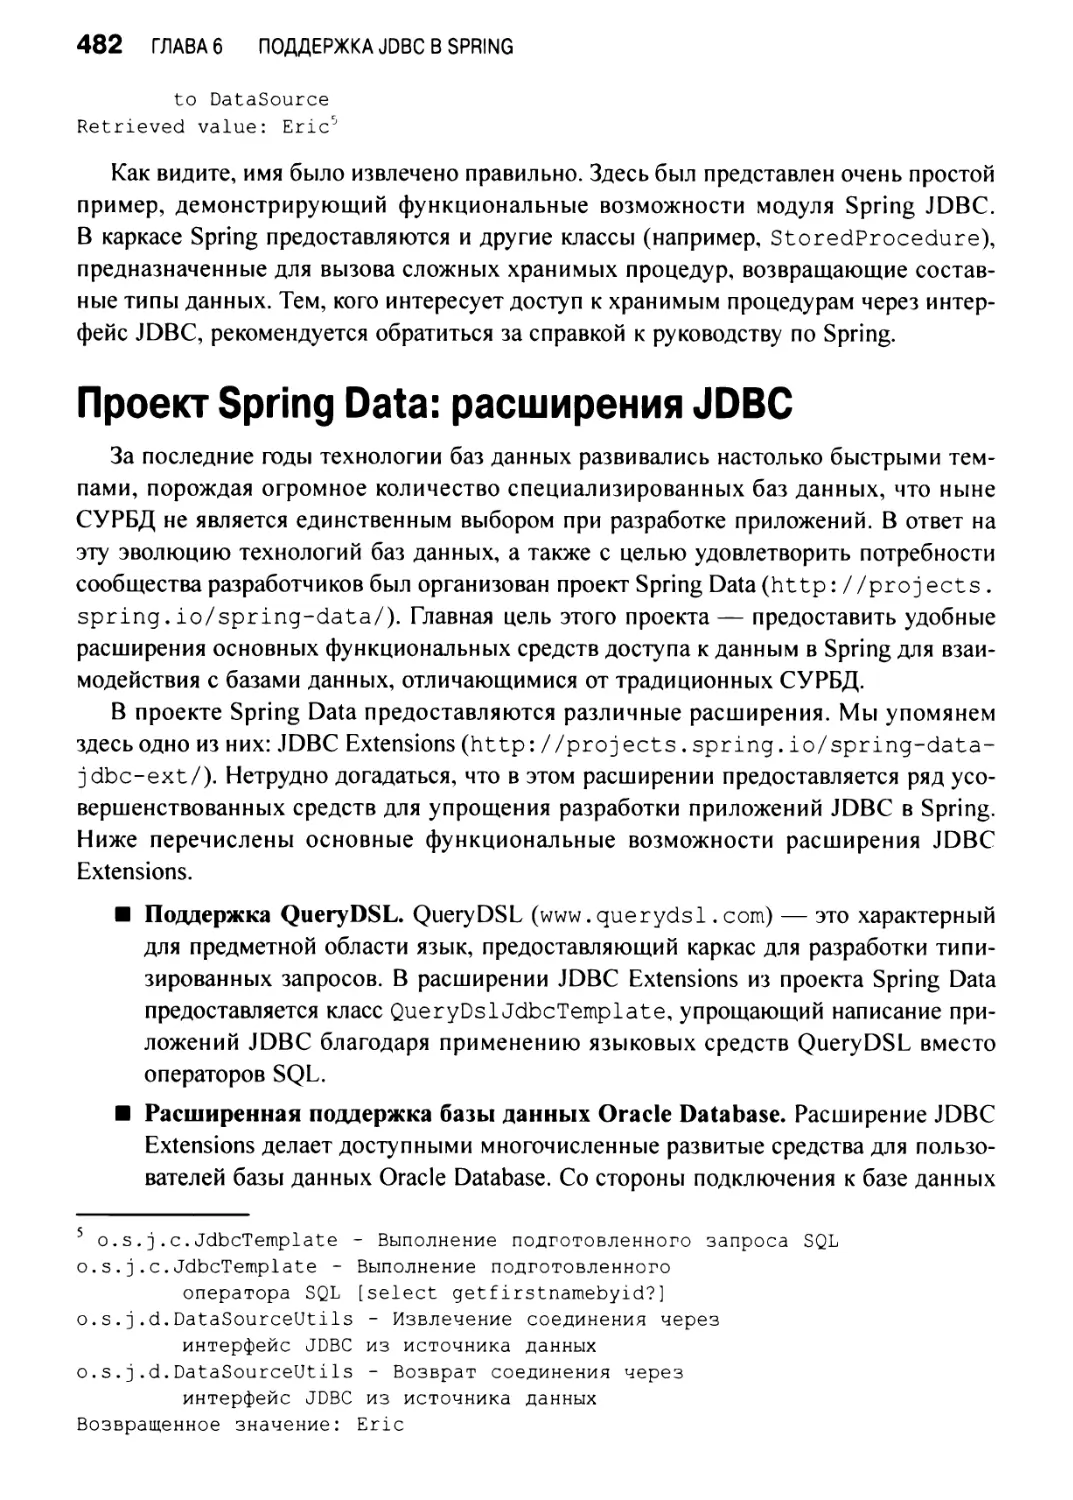 Проект Spring Data: расширения JDBC